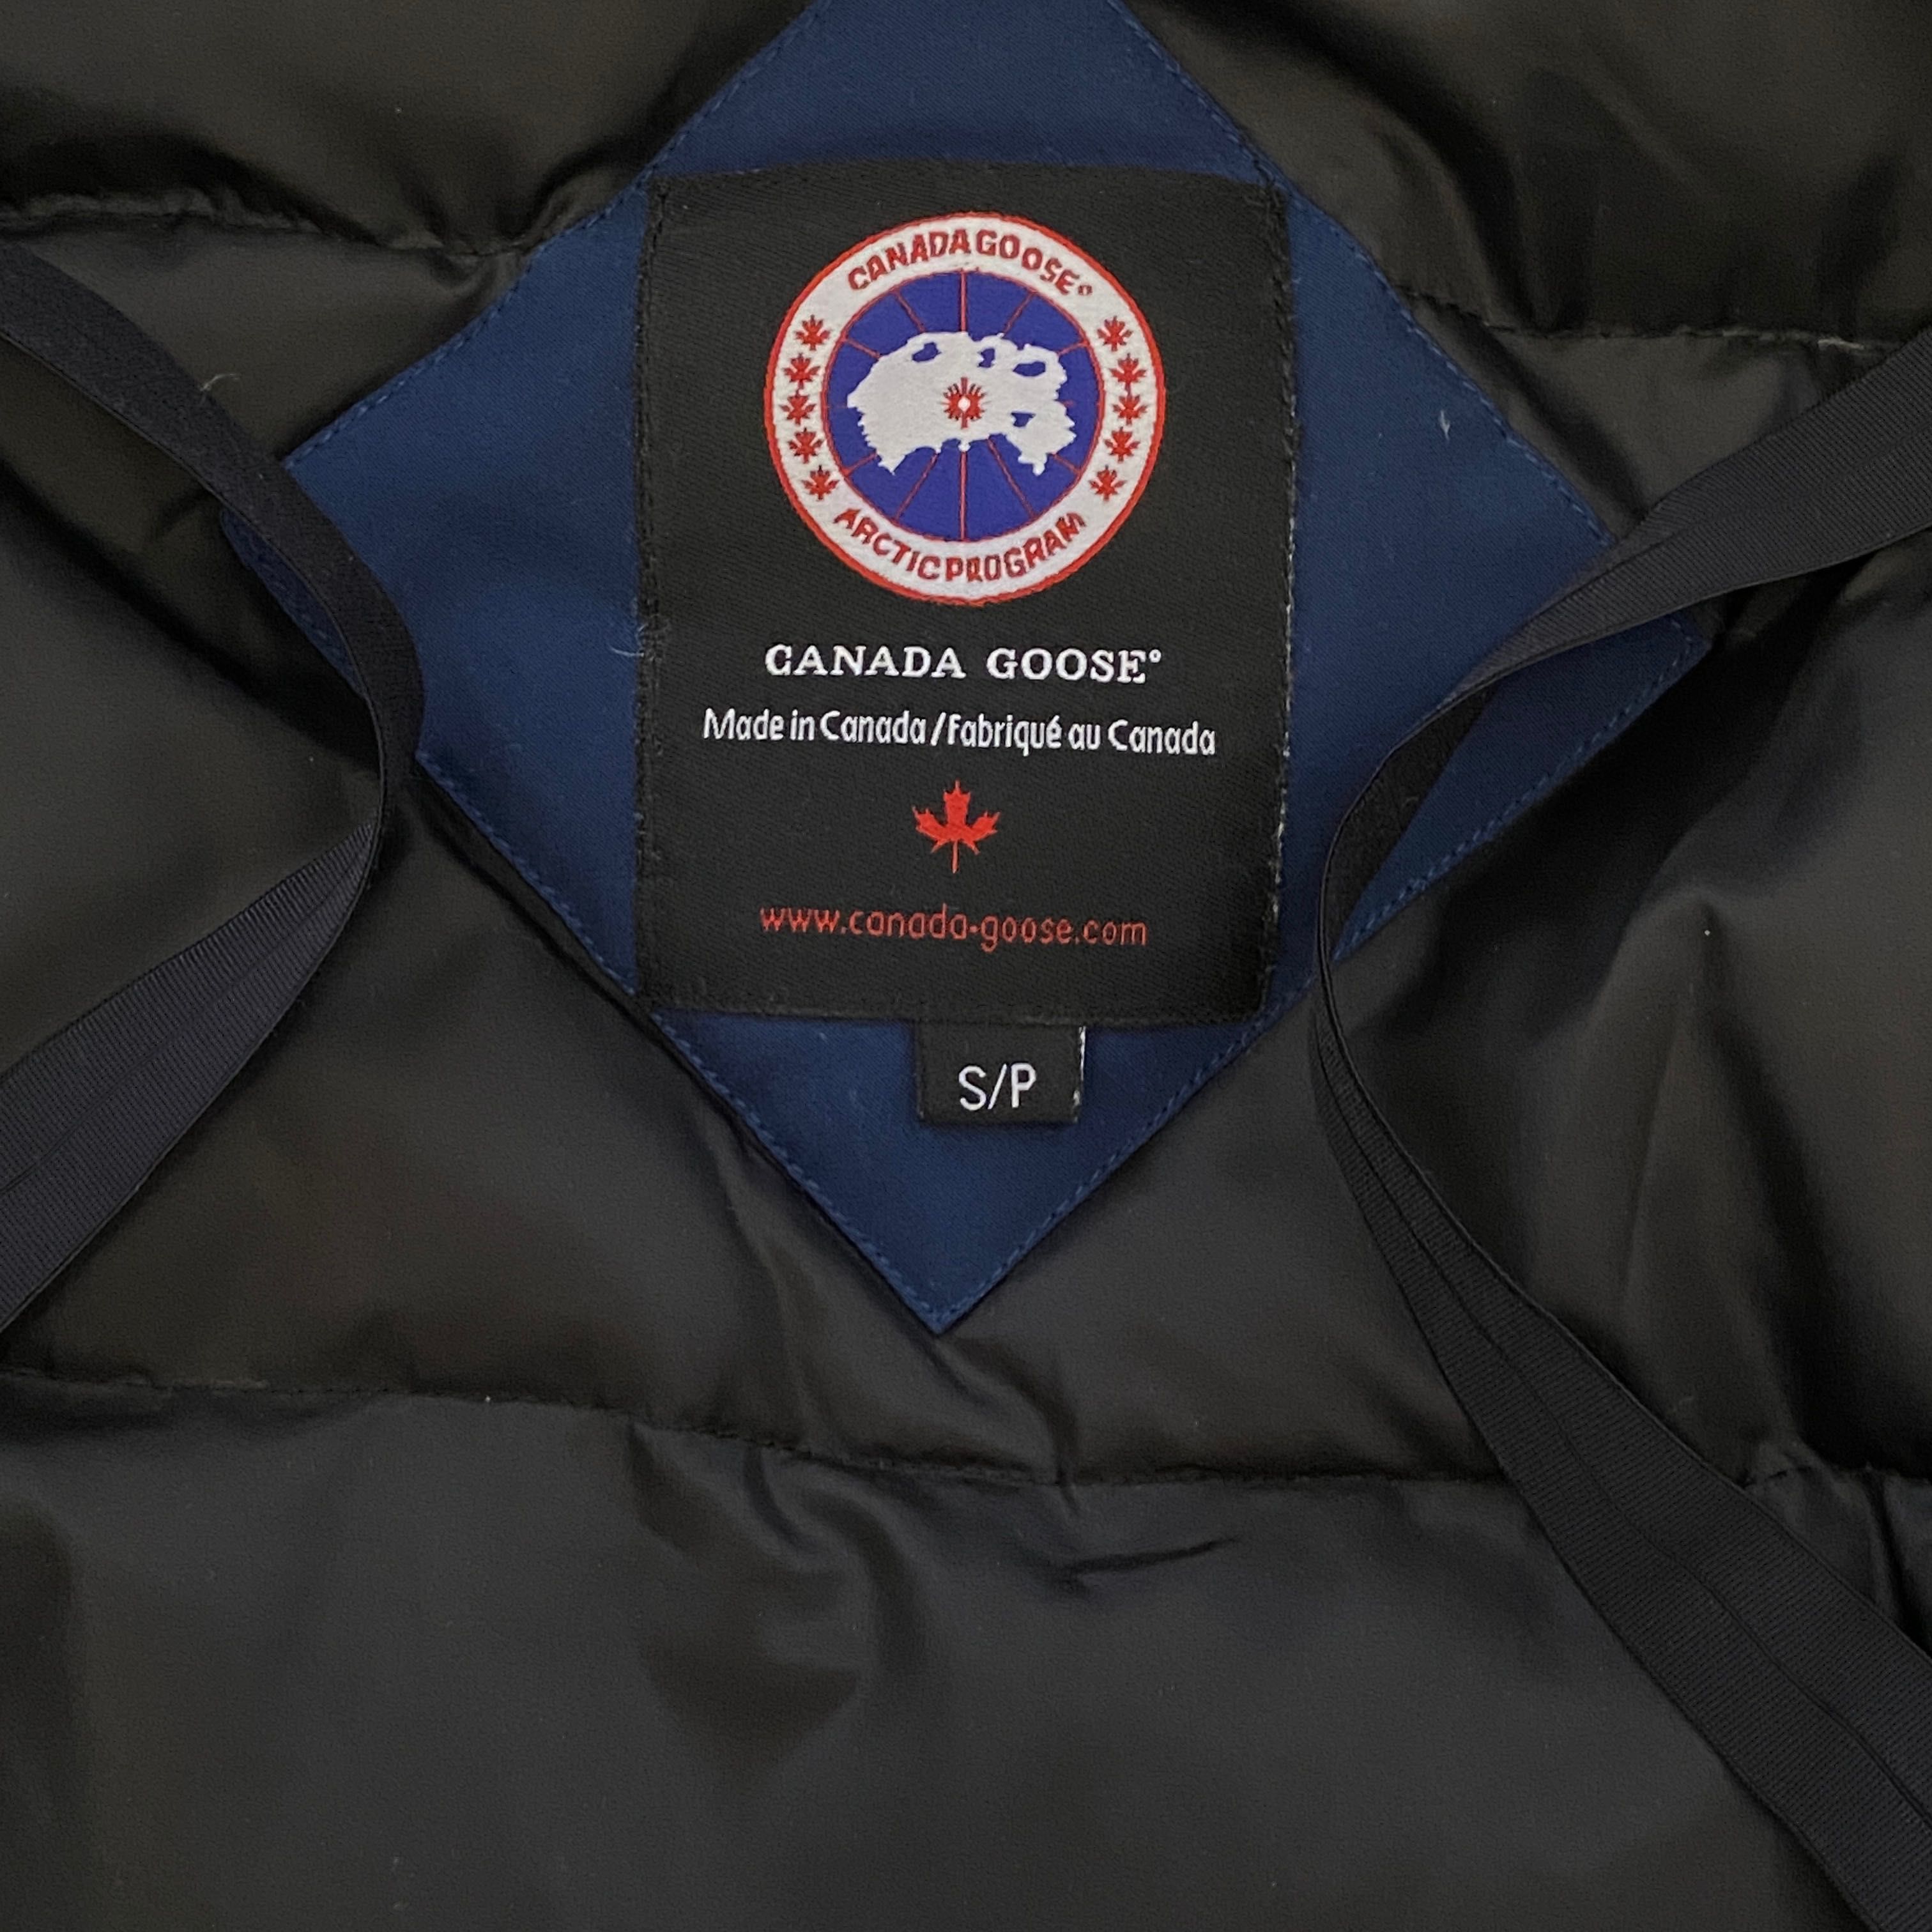 Canada Goose Articprogram kurtka damska puchową zimowa ciepła jacket